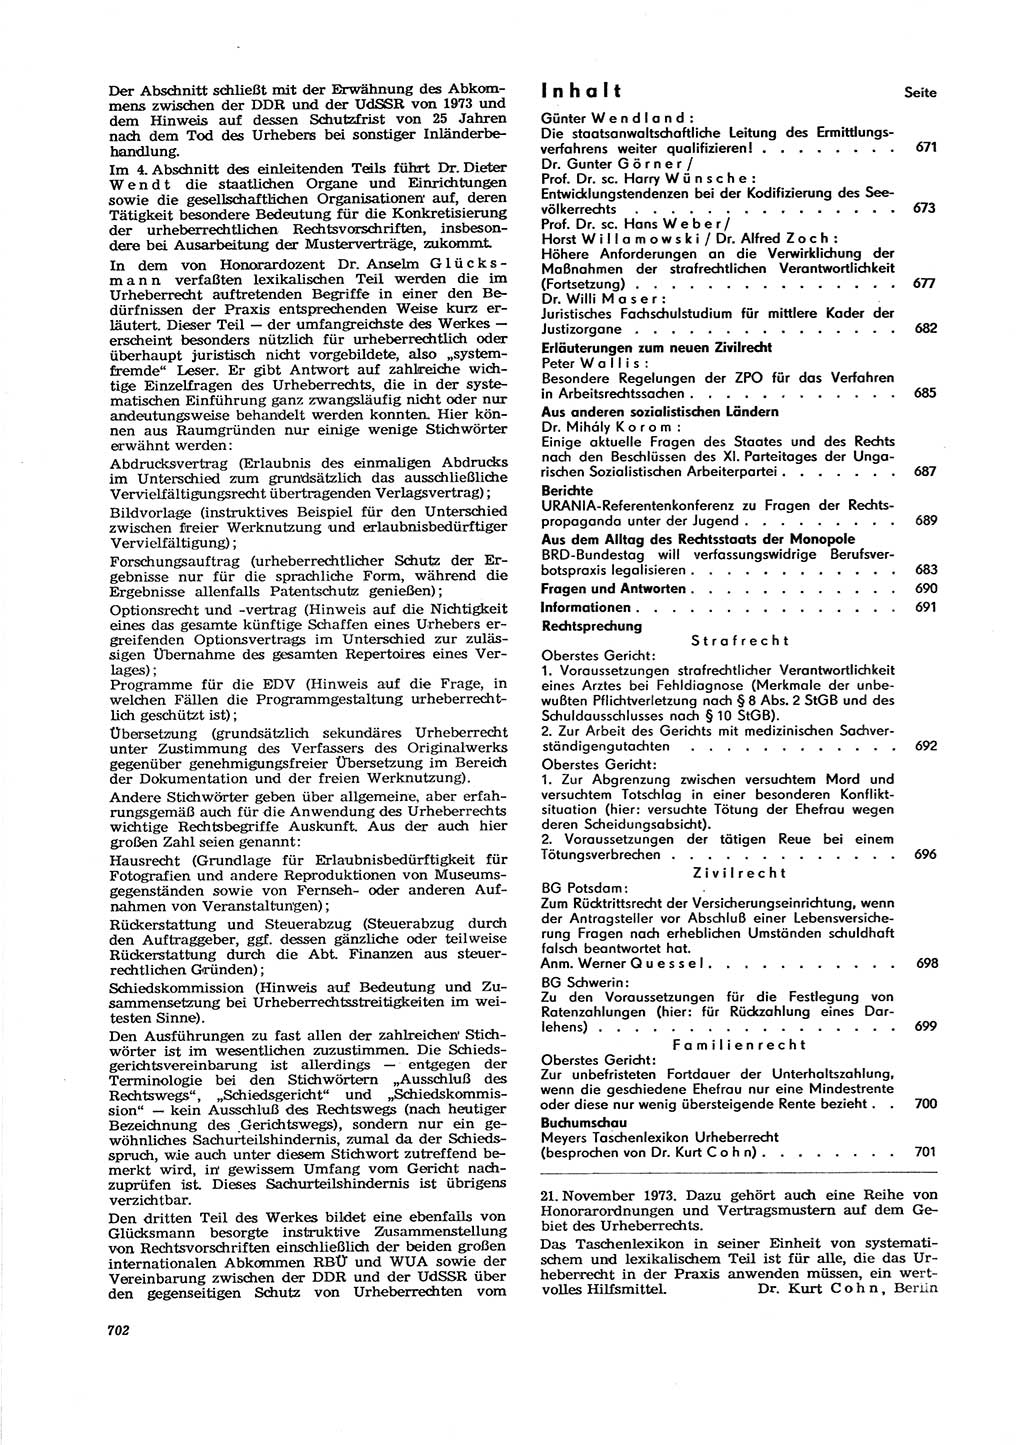 Neue Justiz (NJ), Zeitschrift für Recht und Rechtswissenschaft [Deutsche Demokratische Republik (DDR)], 29. Jahrgang 1975, Seite 702 (NJ DDR 1975, S. 702)